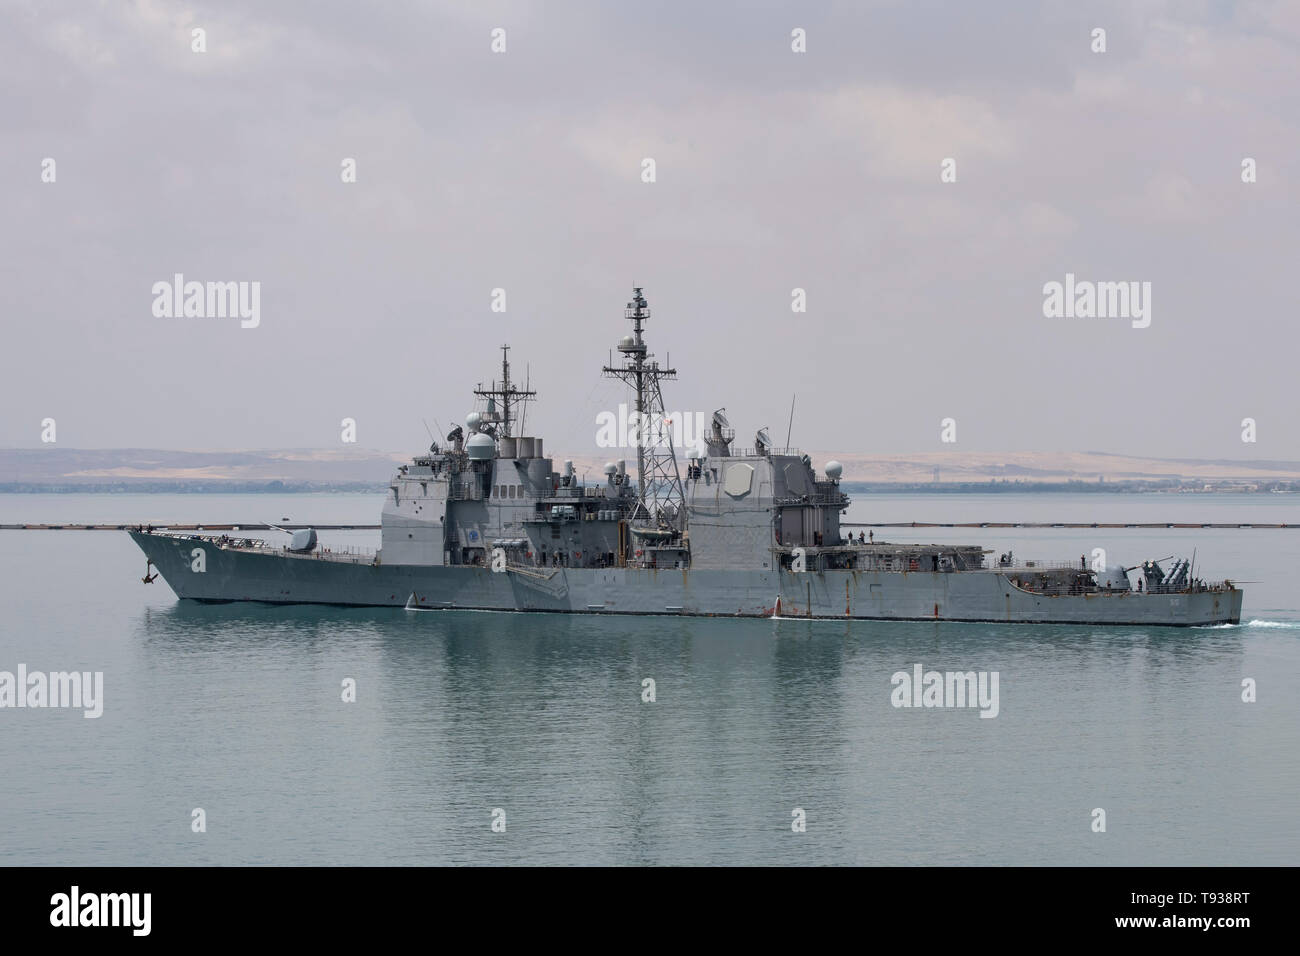 Ägypten, Suez Kanal. US-Militär Schiffe im Transit durch den Suezkanal Mai 9, 2019. Ticonderoga-Klasse geführte-missile Cruiser USS Leyte Gulf (CG55). Stockfoto